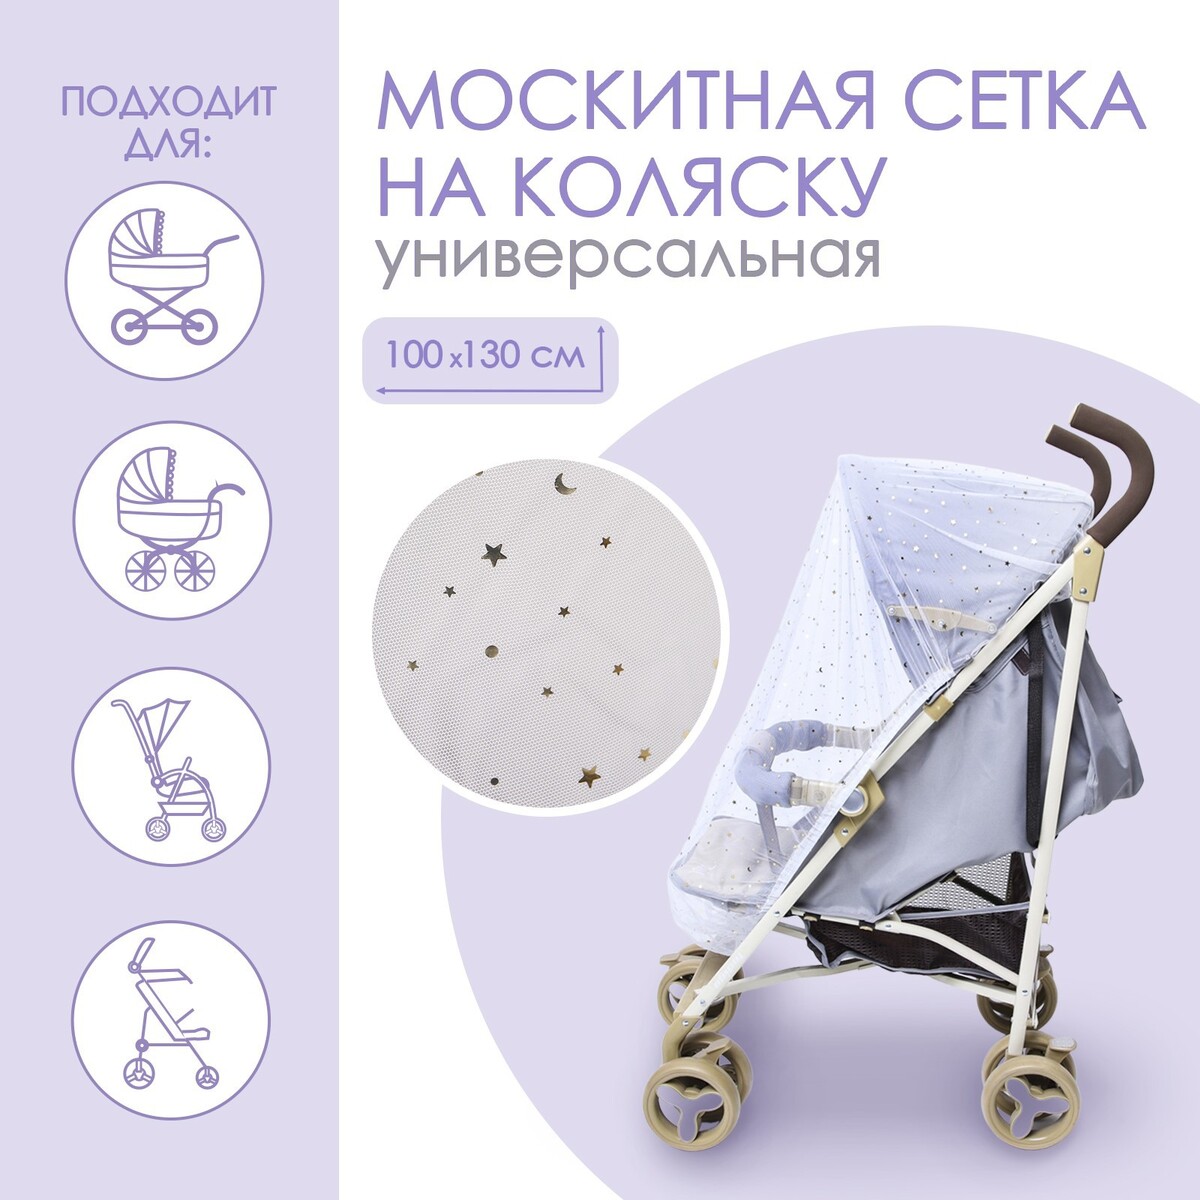 Москитная сетка на коляску универсальная москитная сетка на детскую коляску joolz joolz mosquito net